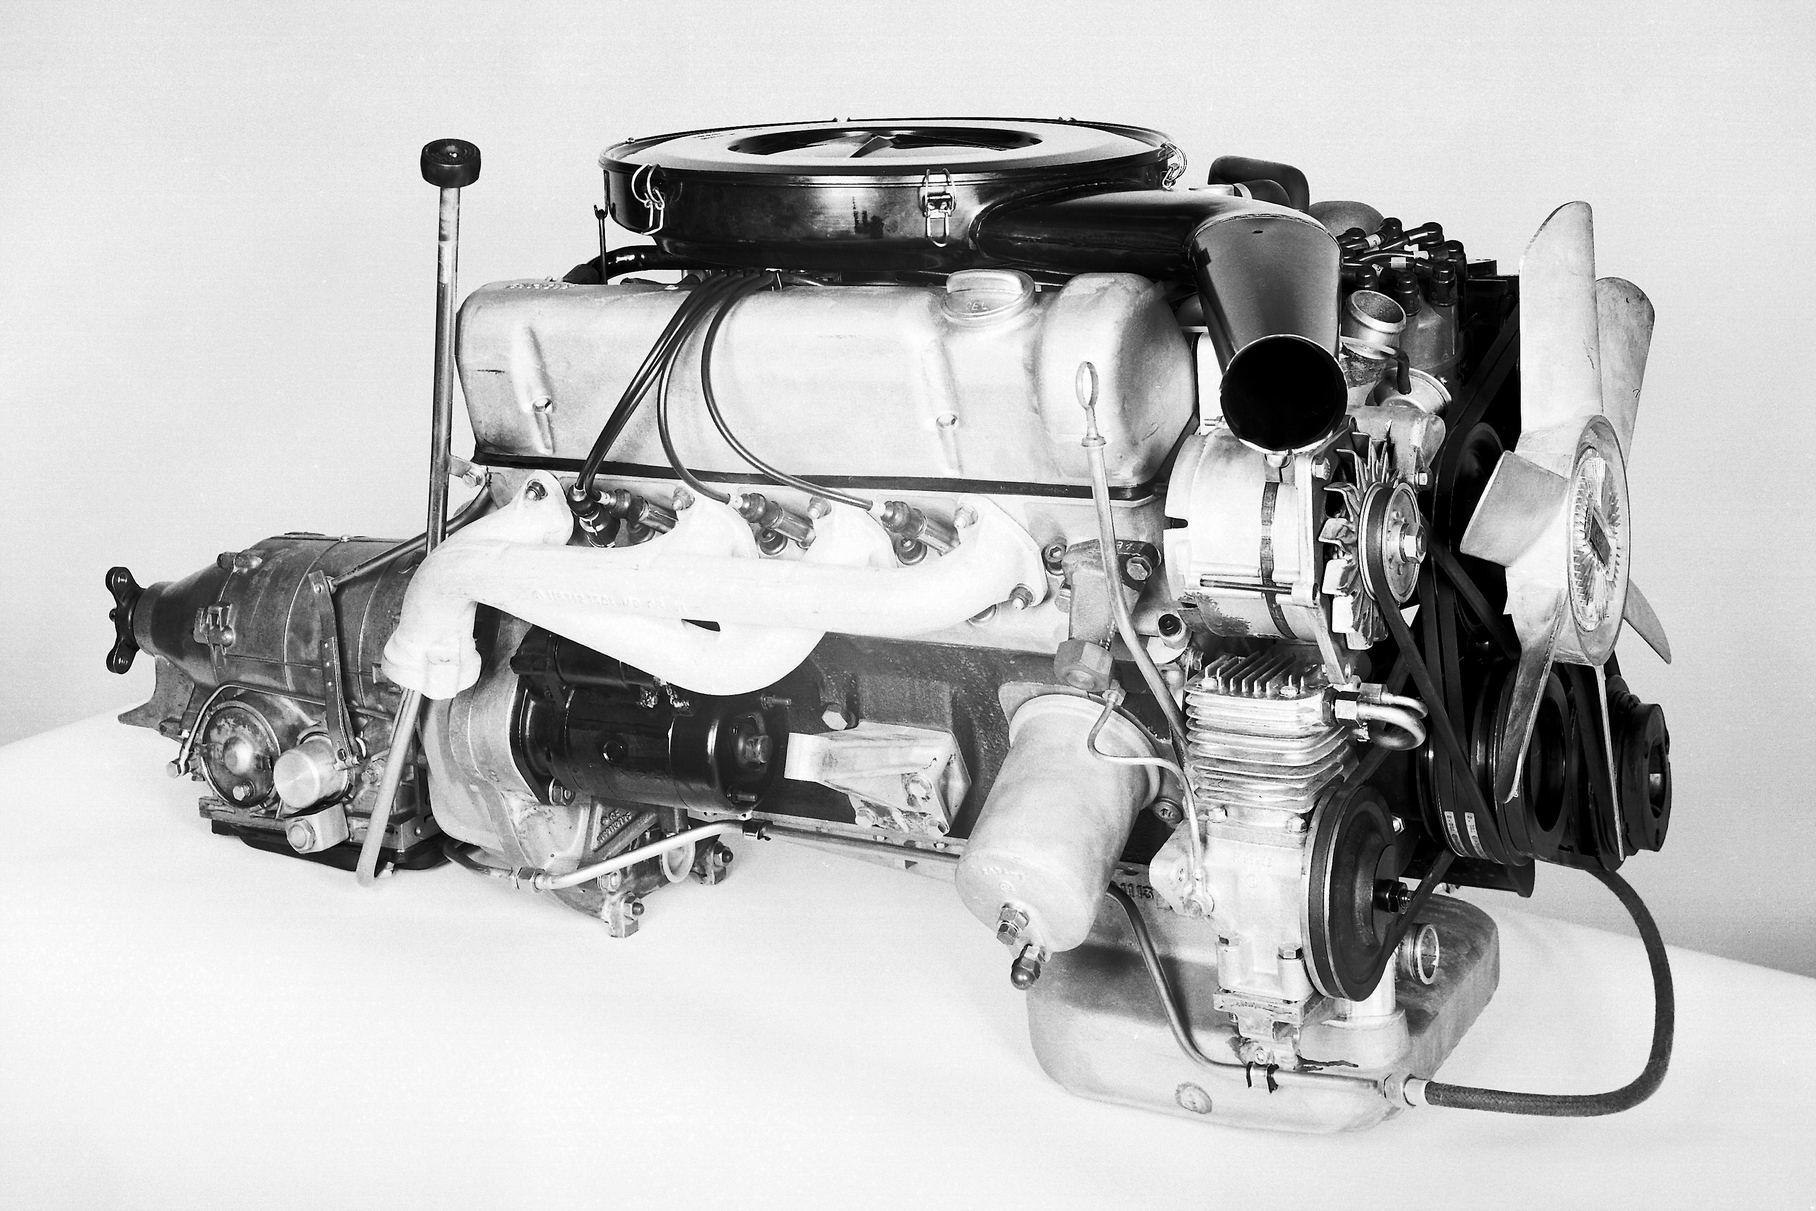 Двигатель V8 3.5 серии M116 был представлен в 1969 году на автосалоне в Женеве, в рамках обновления семейства W108/W109